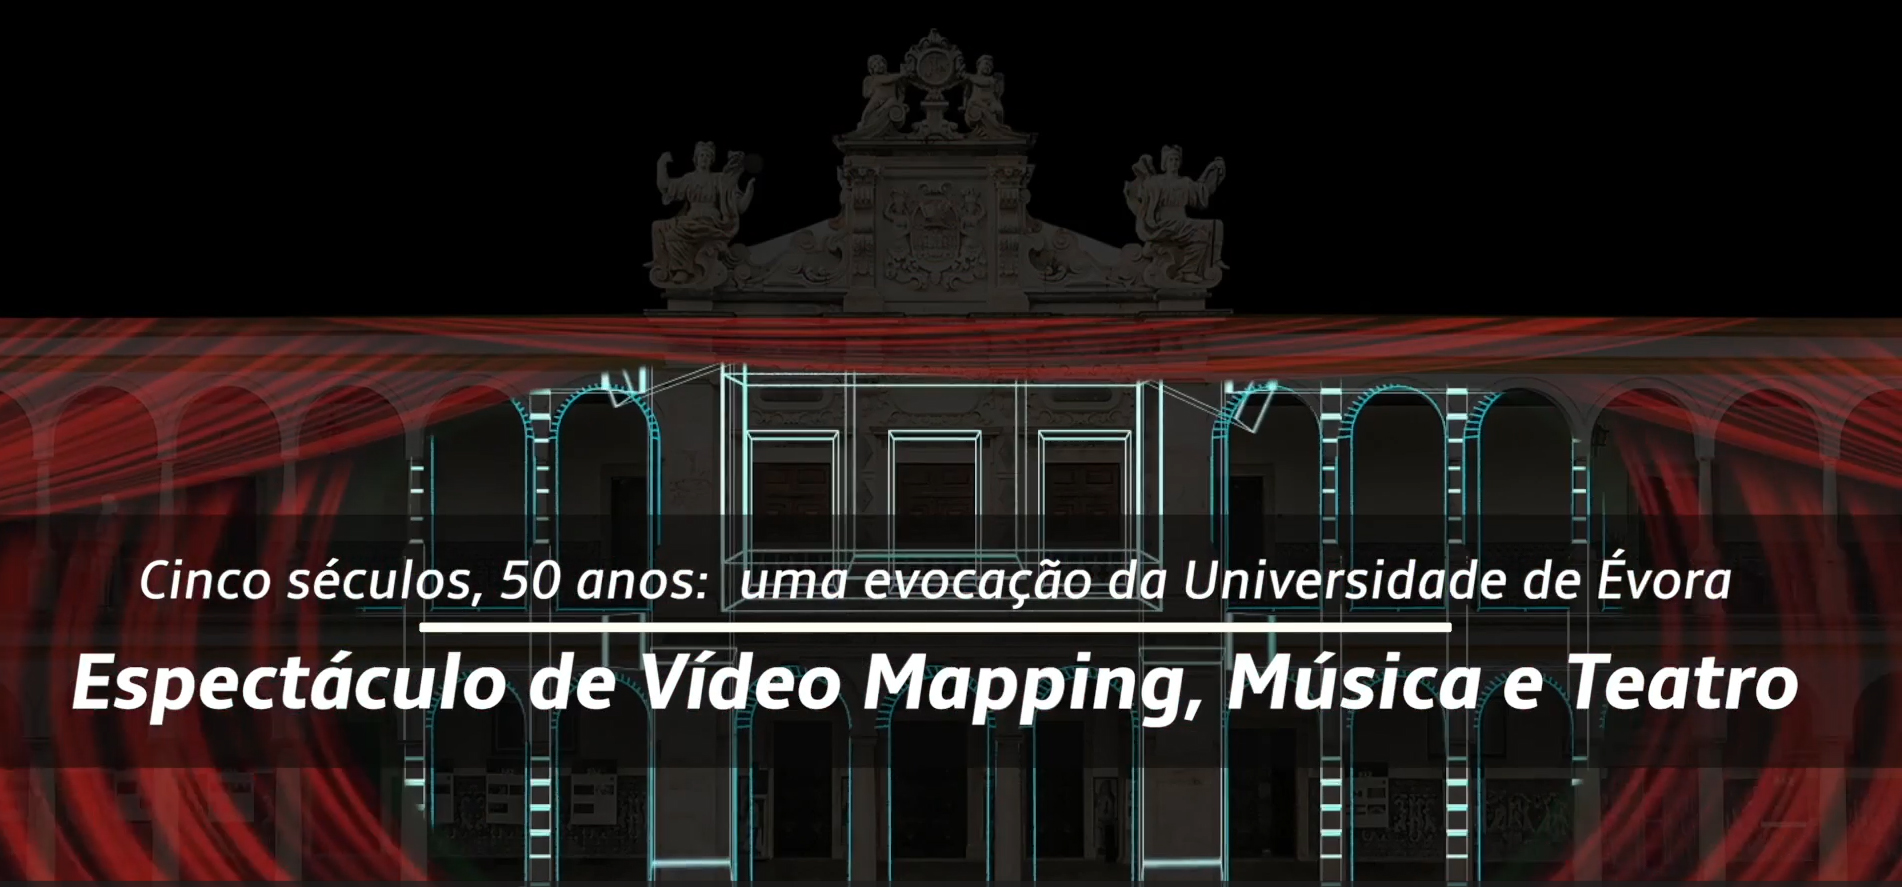 Videomapping nos Claustros do Colégio Espírito Santo assinalam cinco séculos e 50 anos da Universidade de Évora